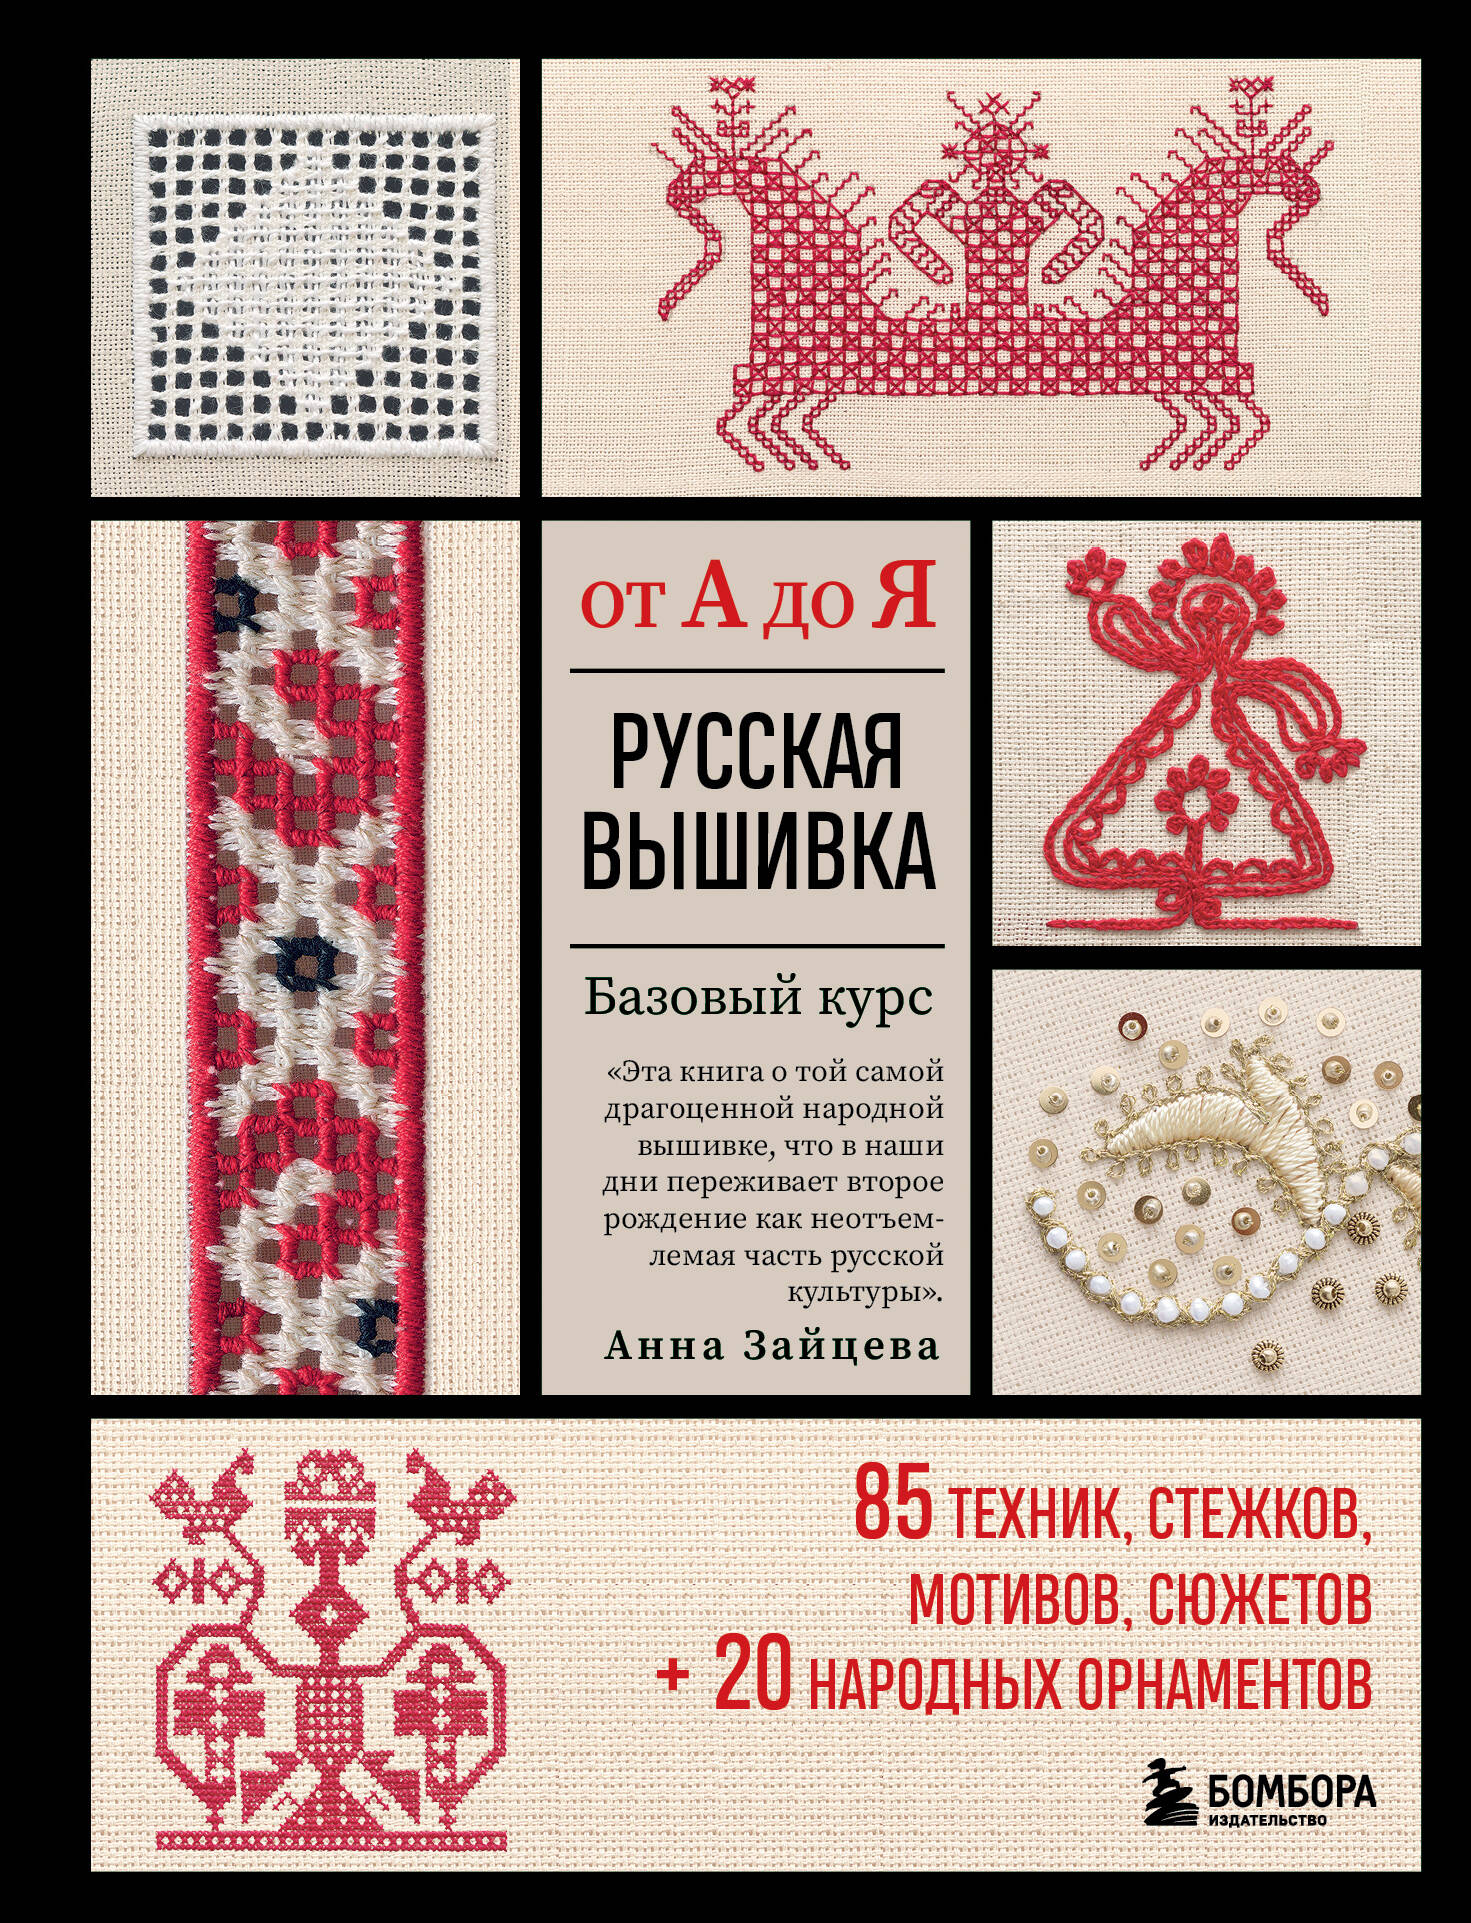 Основные виды и особенности русской вышивки и вышивки народов мира